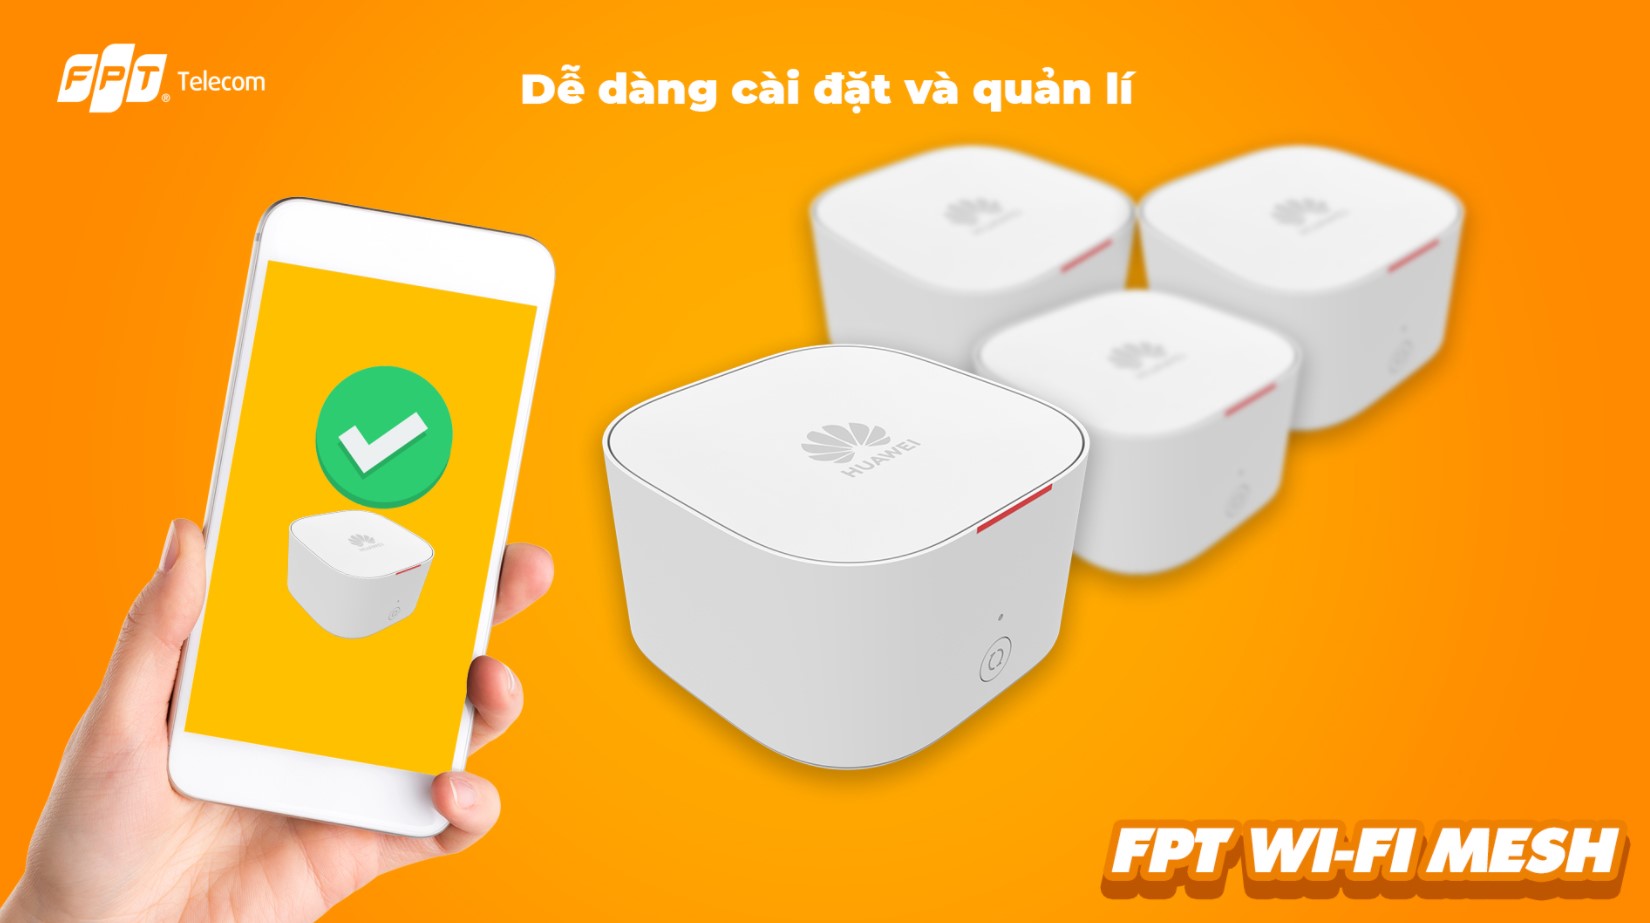 Wifi Mesh do FPT cung cấp có tính bảo mật cao, an toàn kết nối